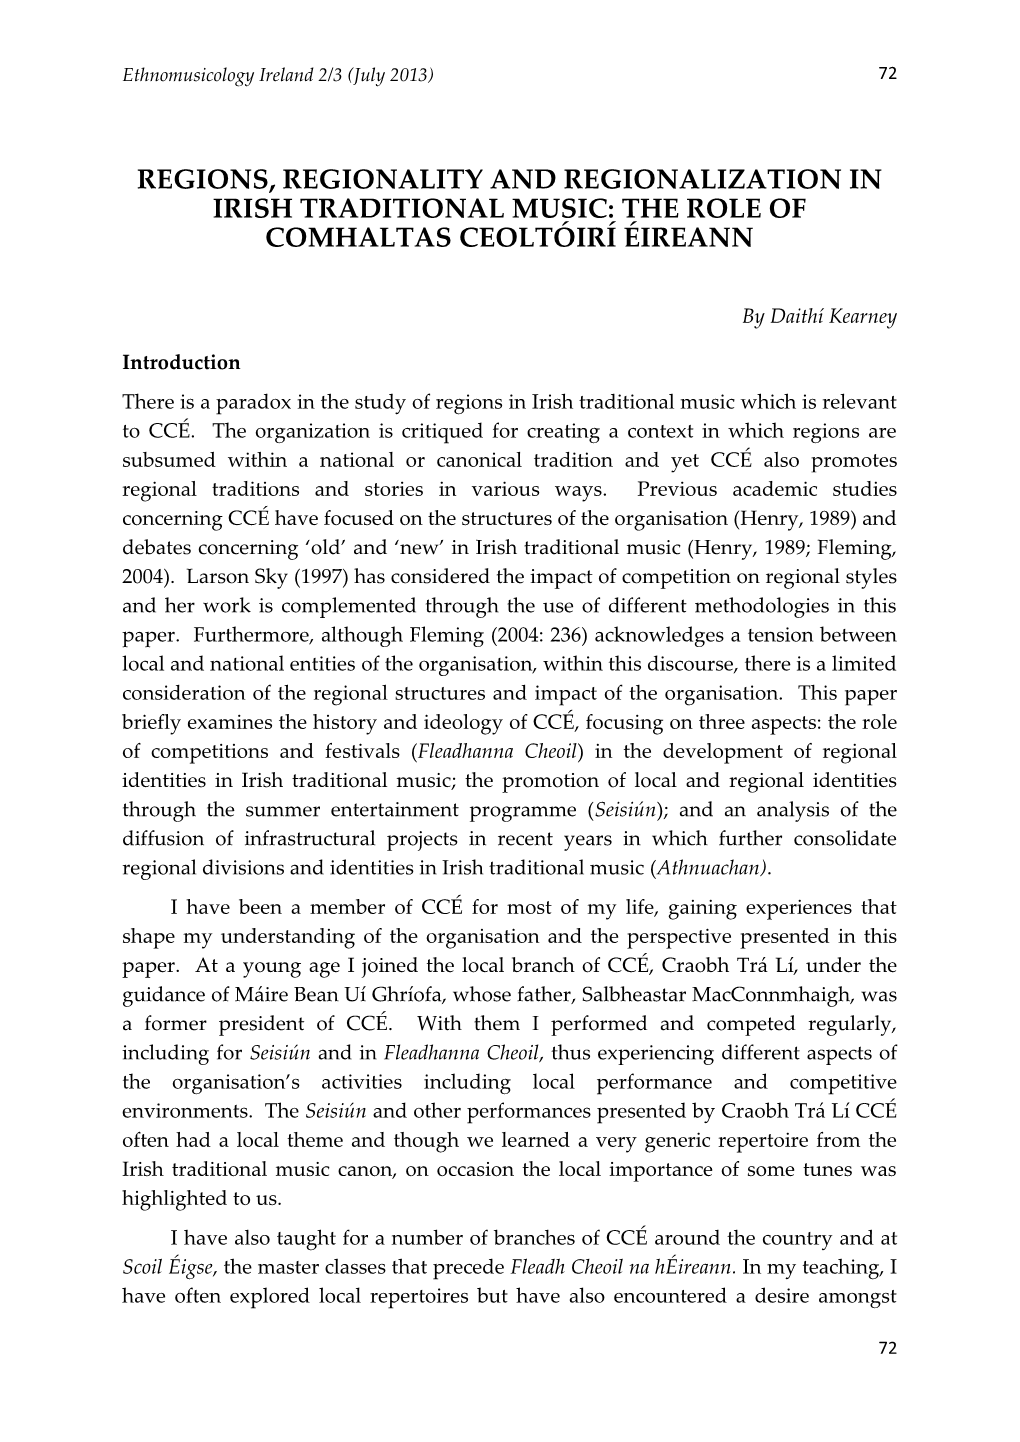 The Role of Comhaltas Ceoltóirí Éireann